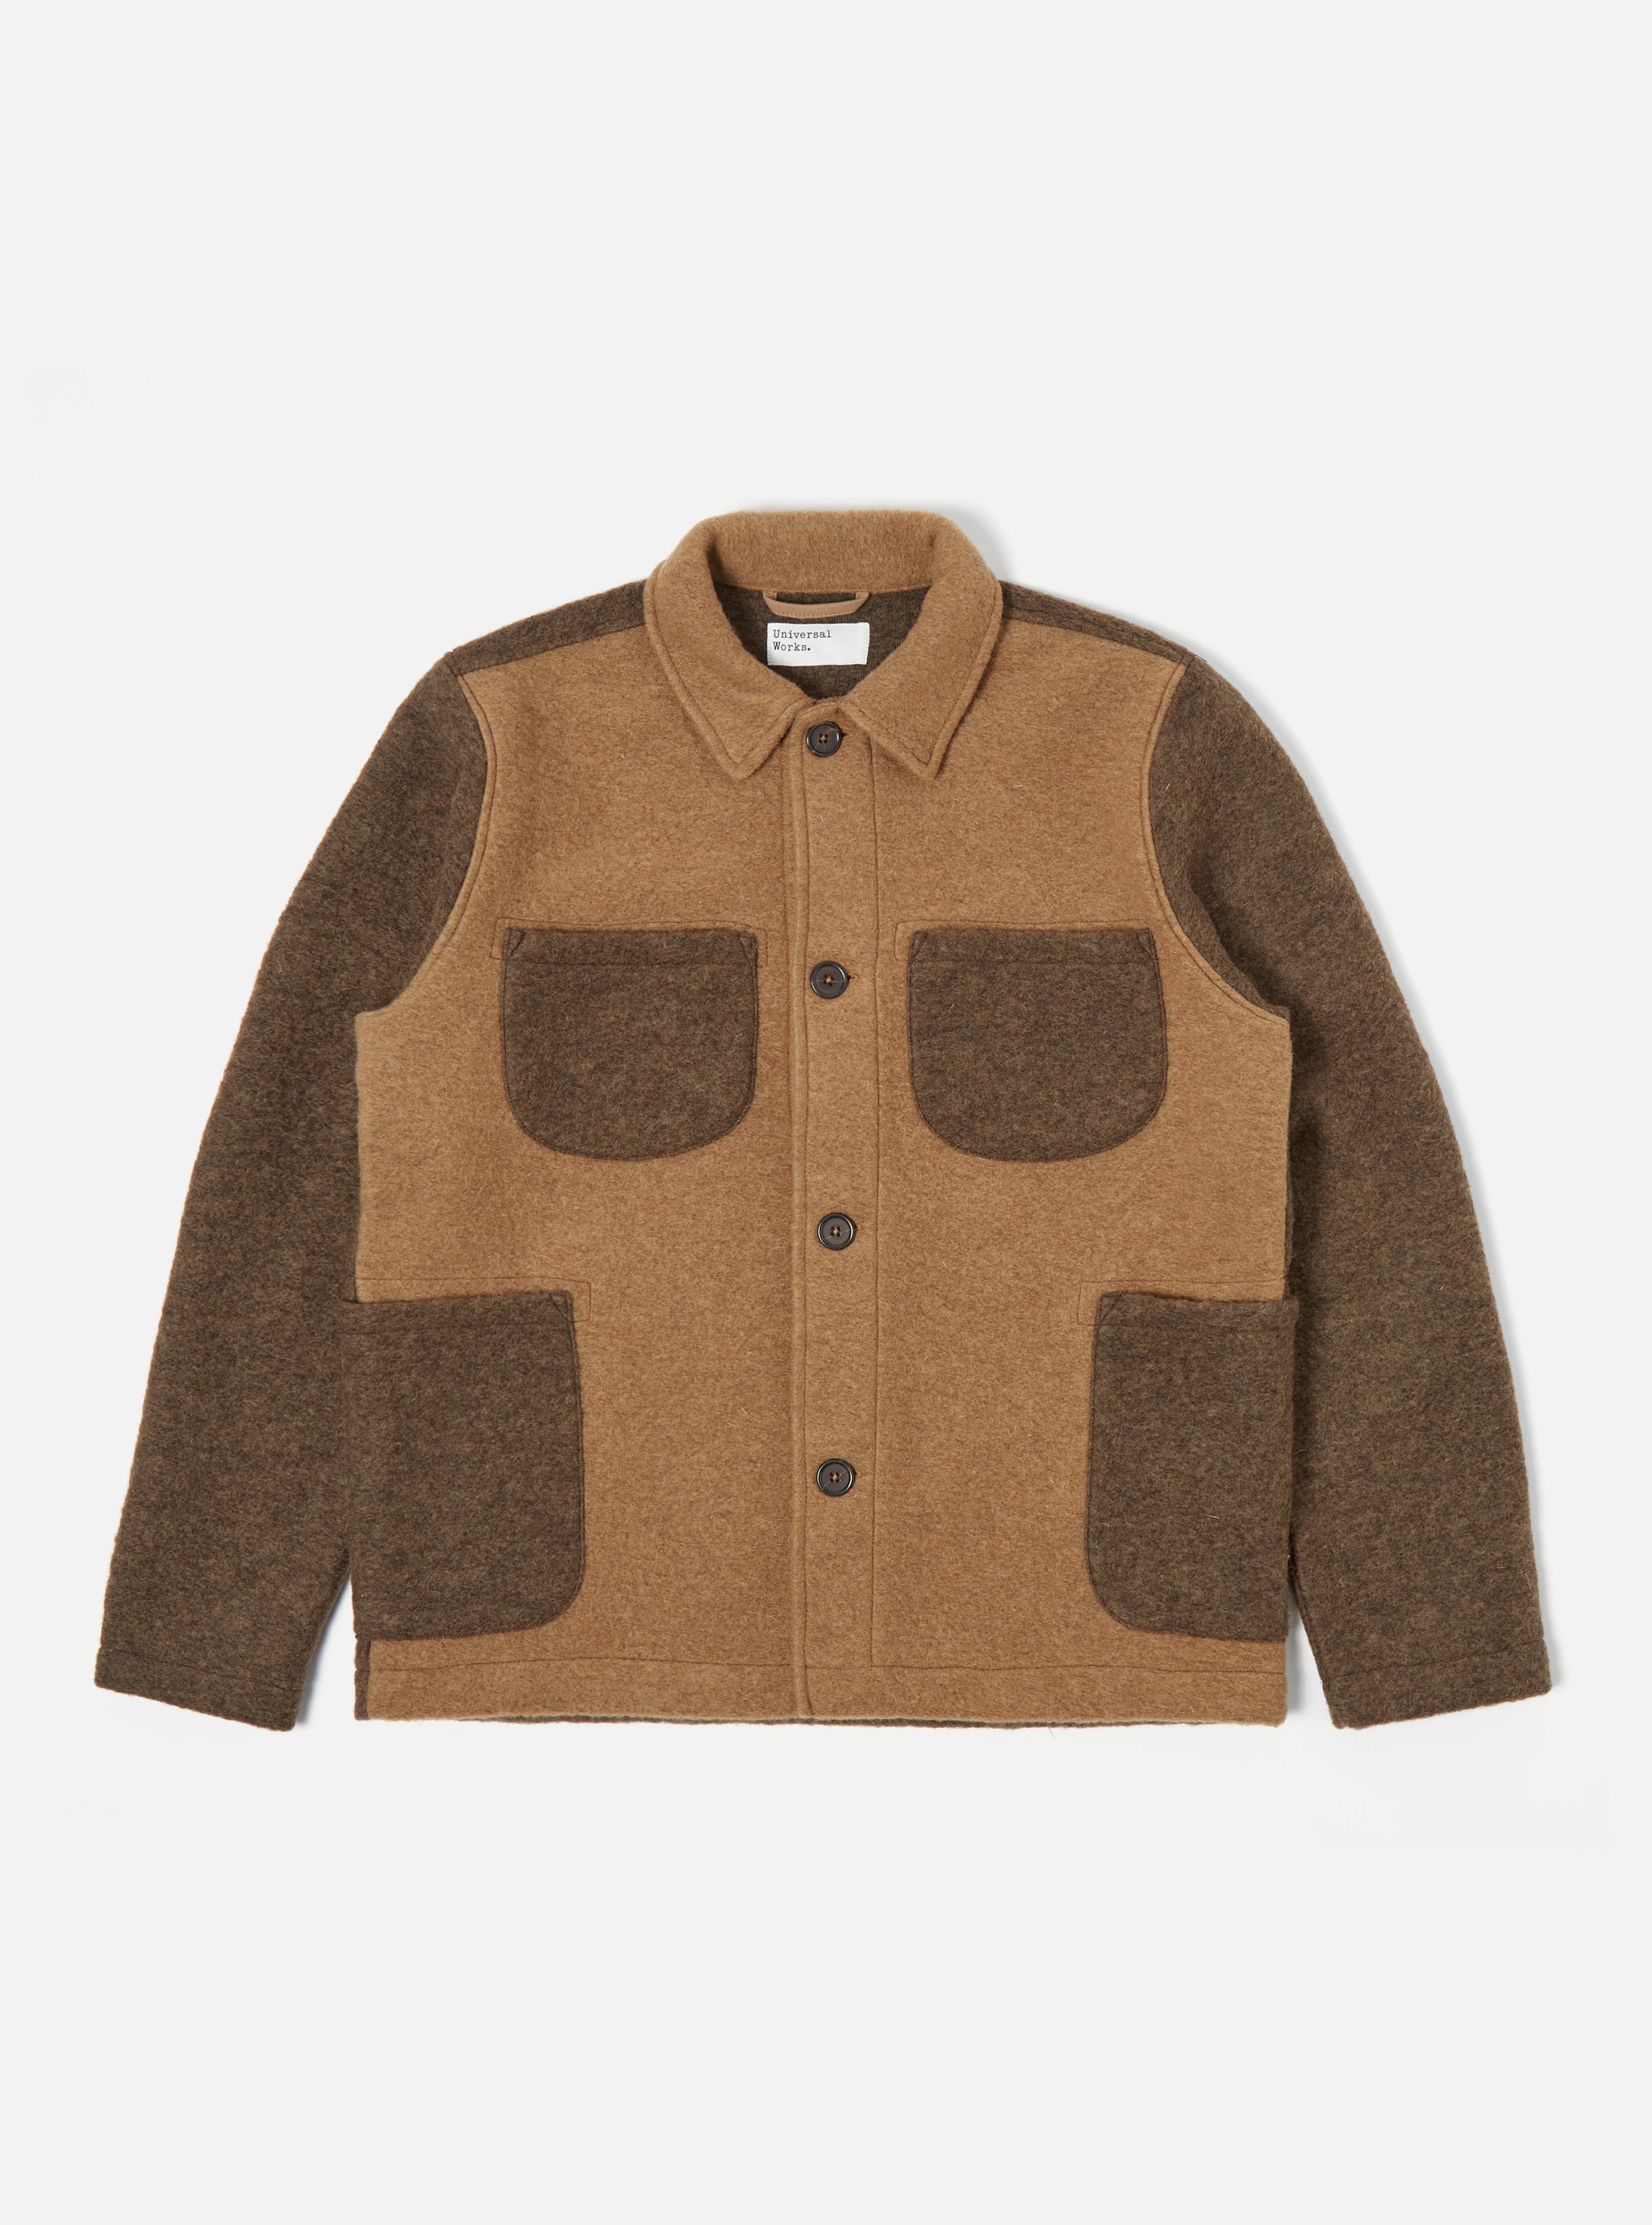 Universal Works Lumber Jacket in Taupe/Brown Wool Fleece